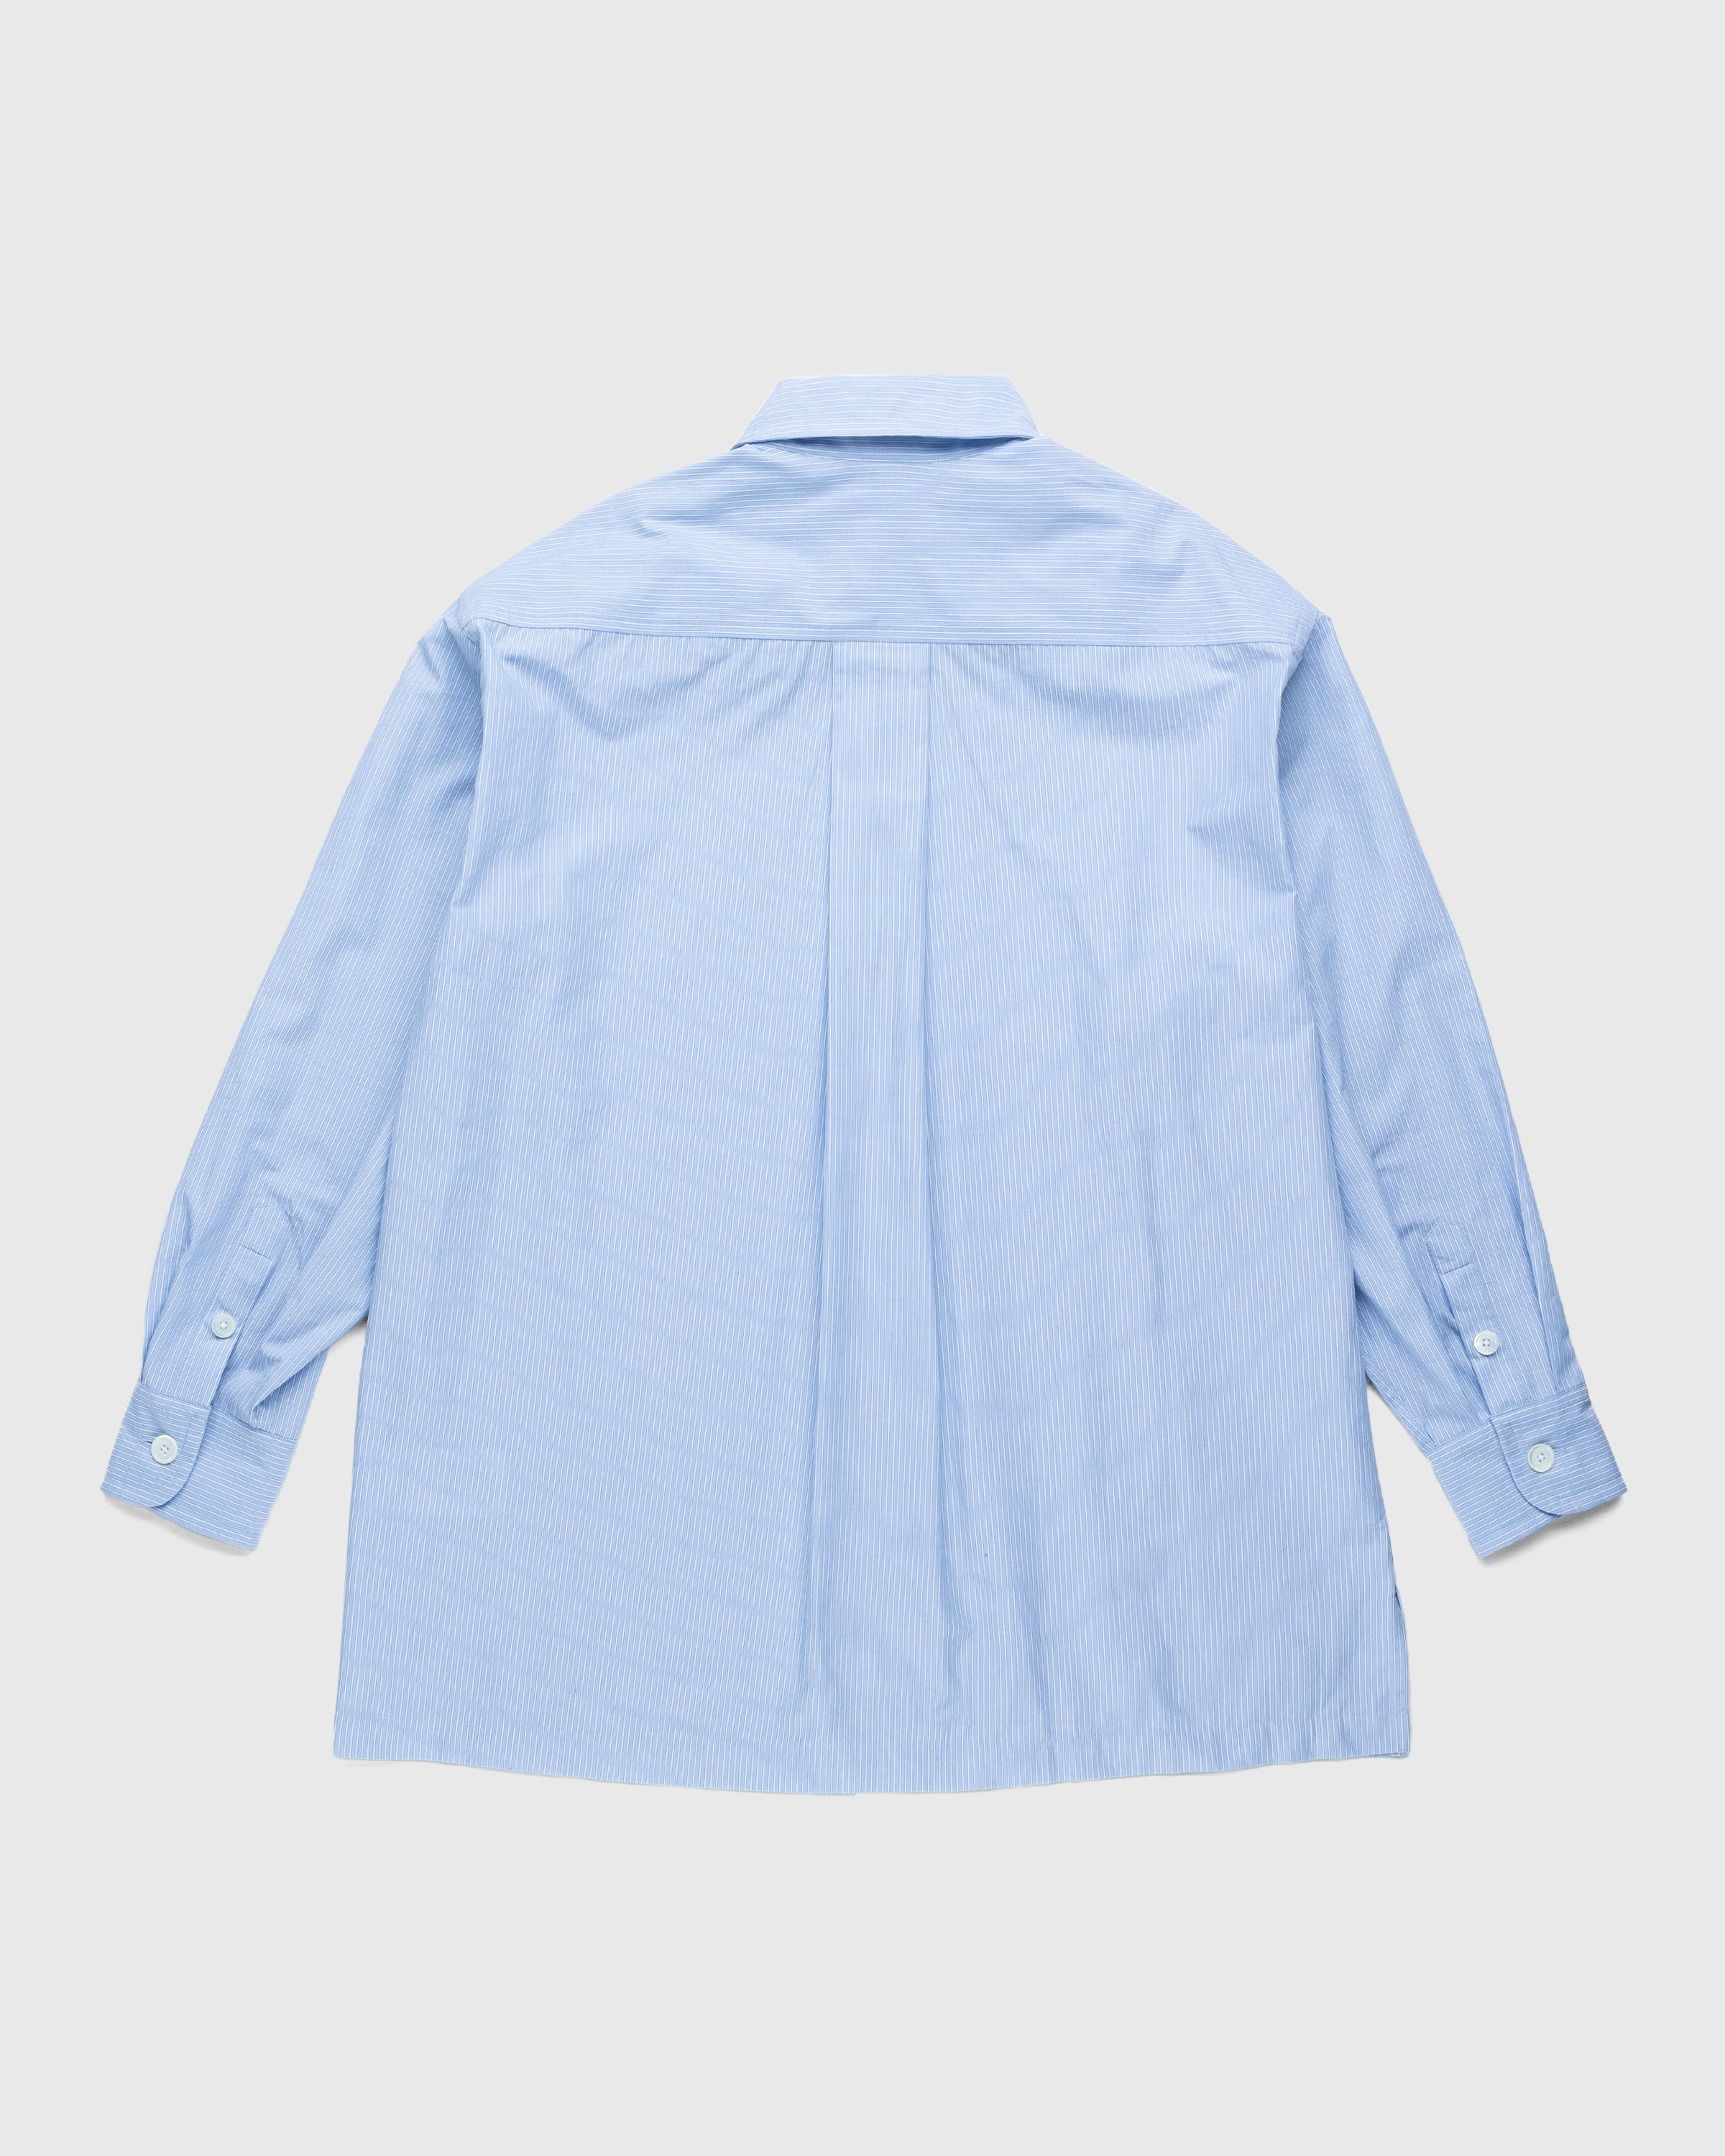 Kenzo - Boke Flower Crest Overshirt Sky Blue - Clothing - Blue - Image 2